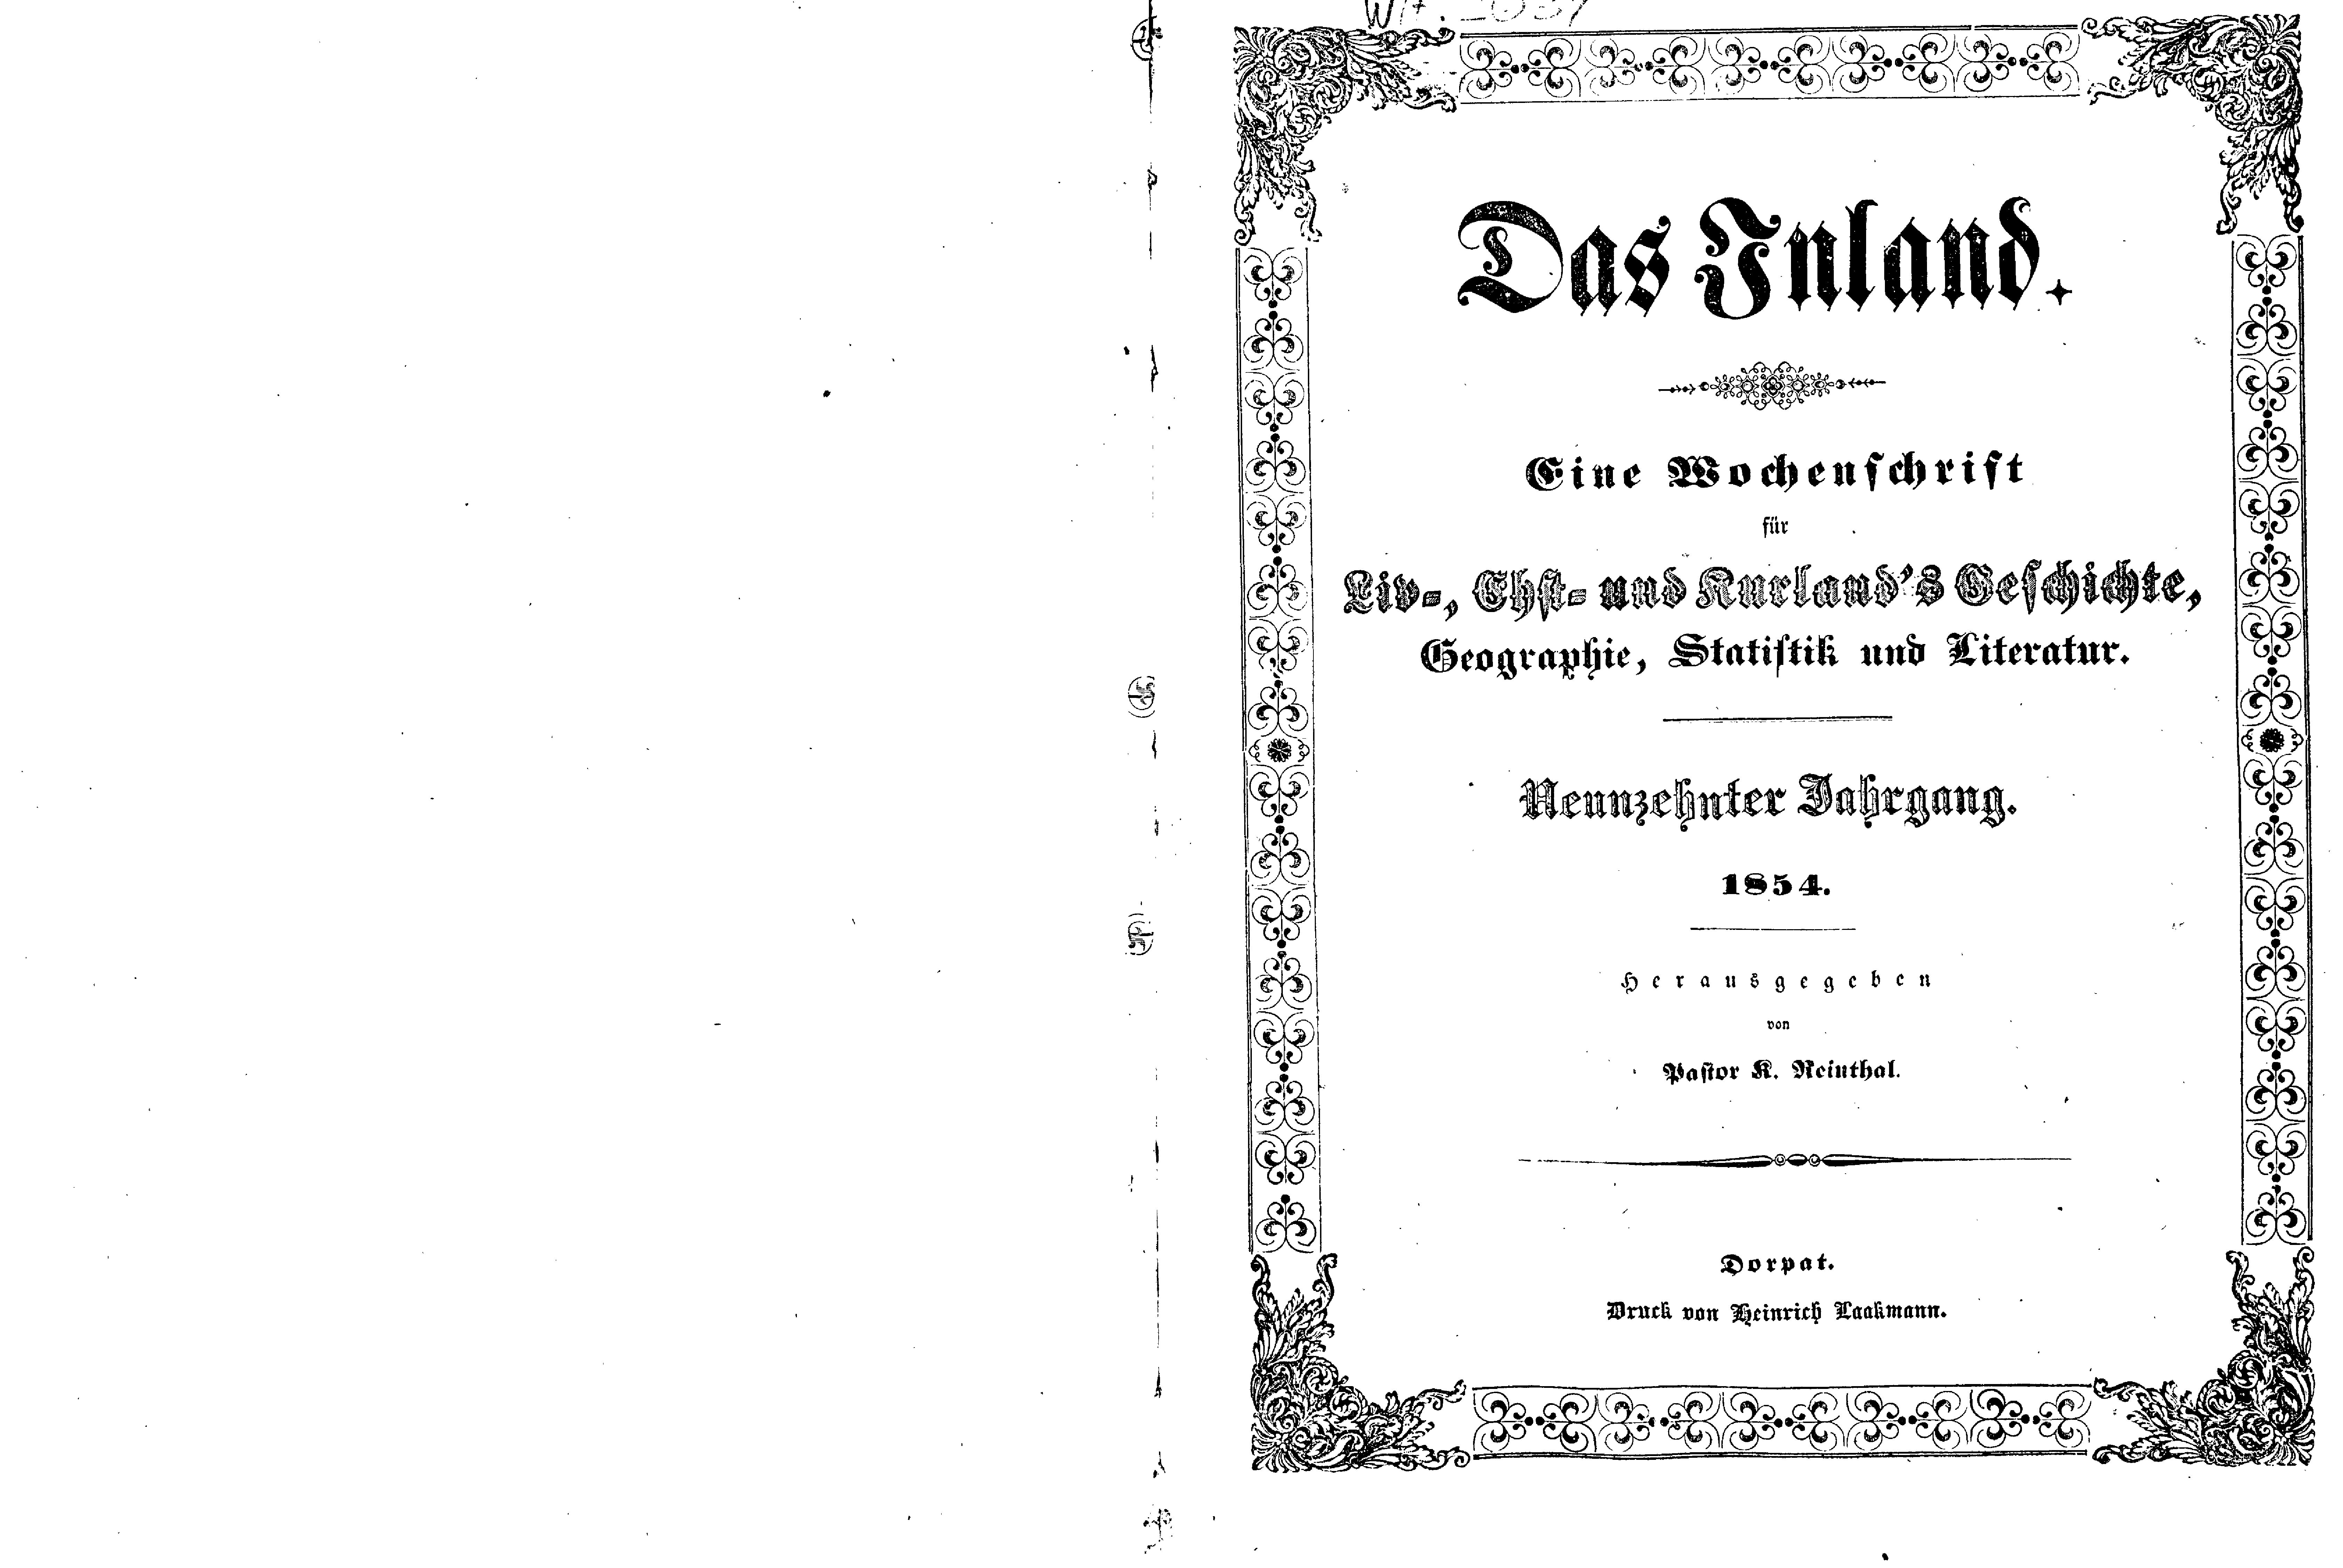 Das Inland [19] (1854) | 1. Титульный лист